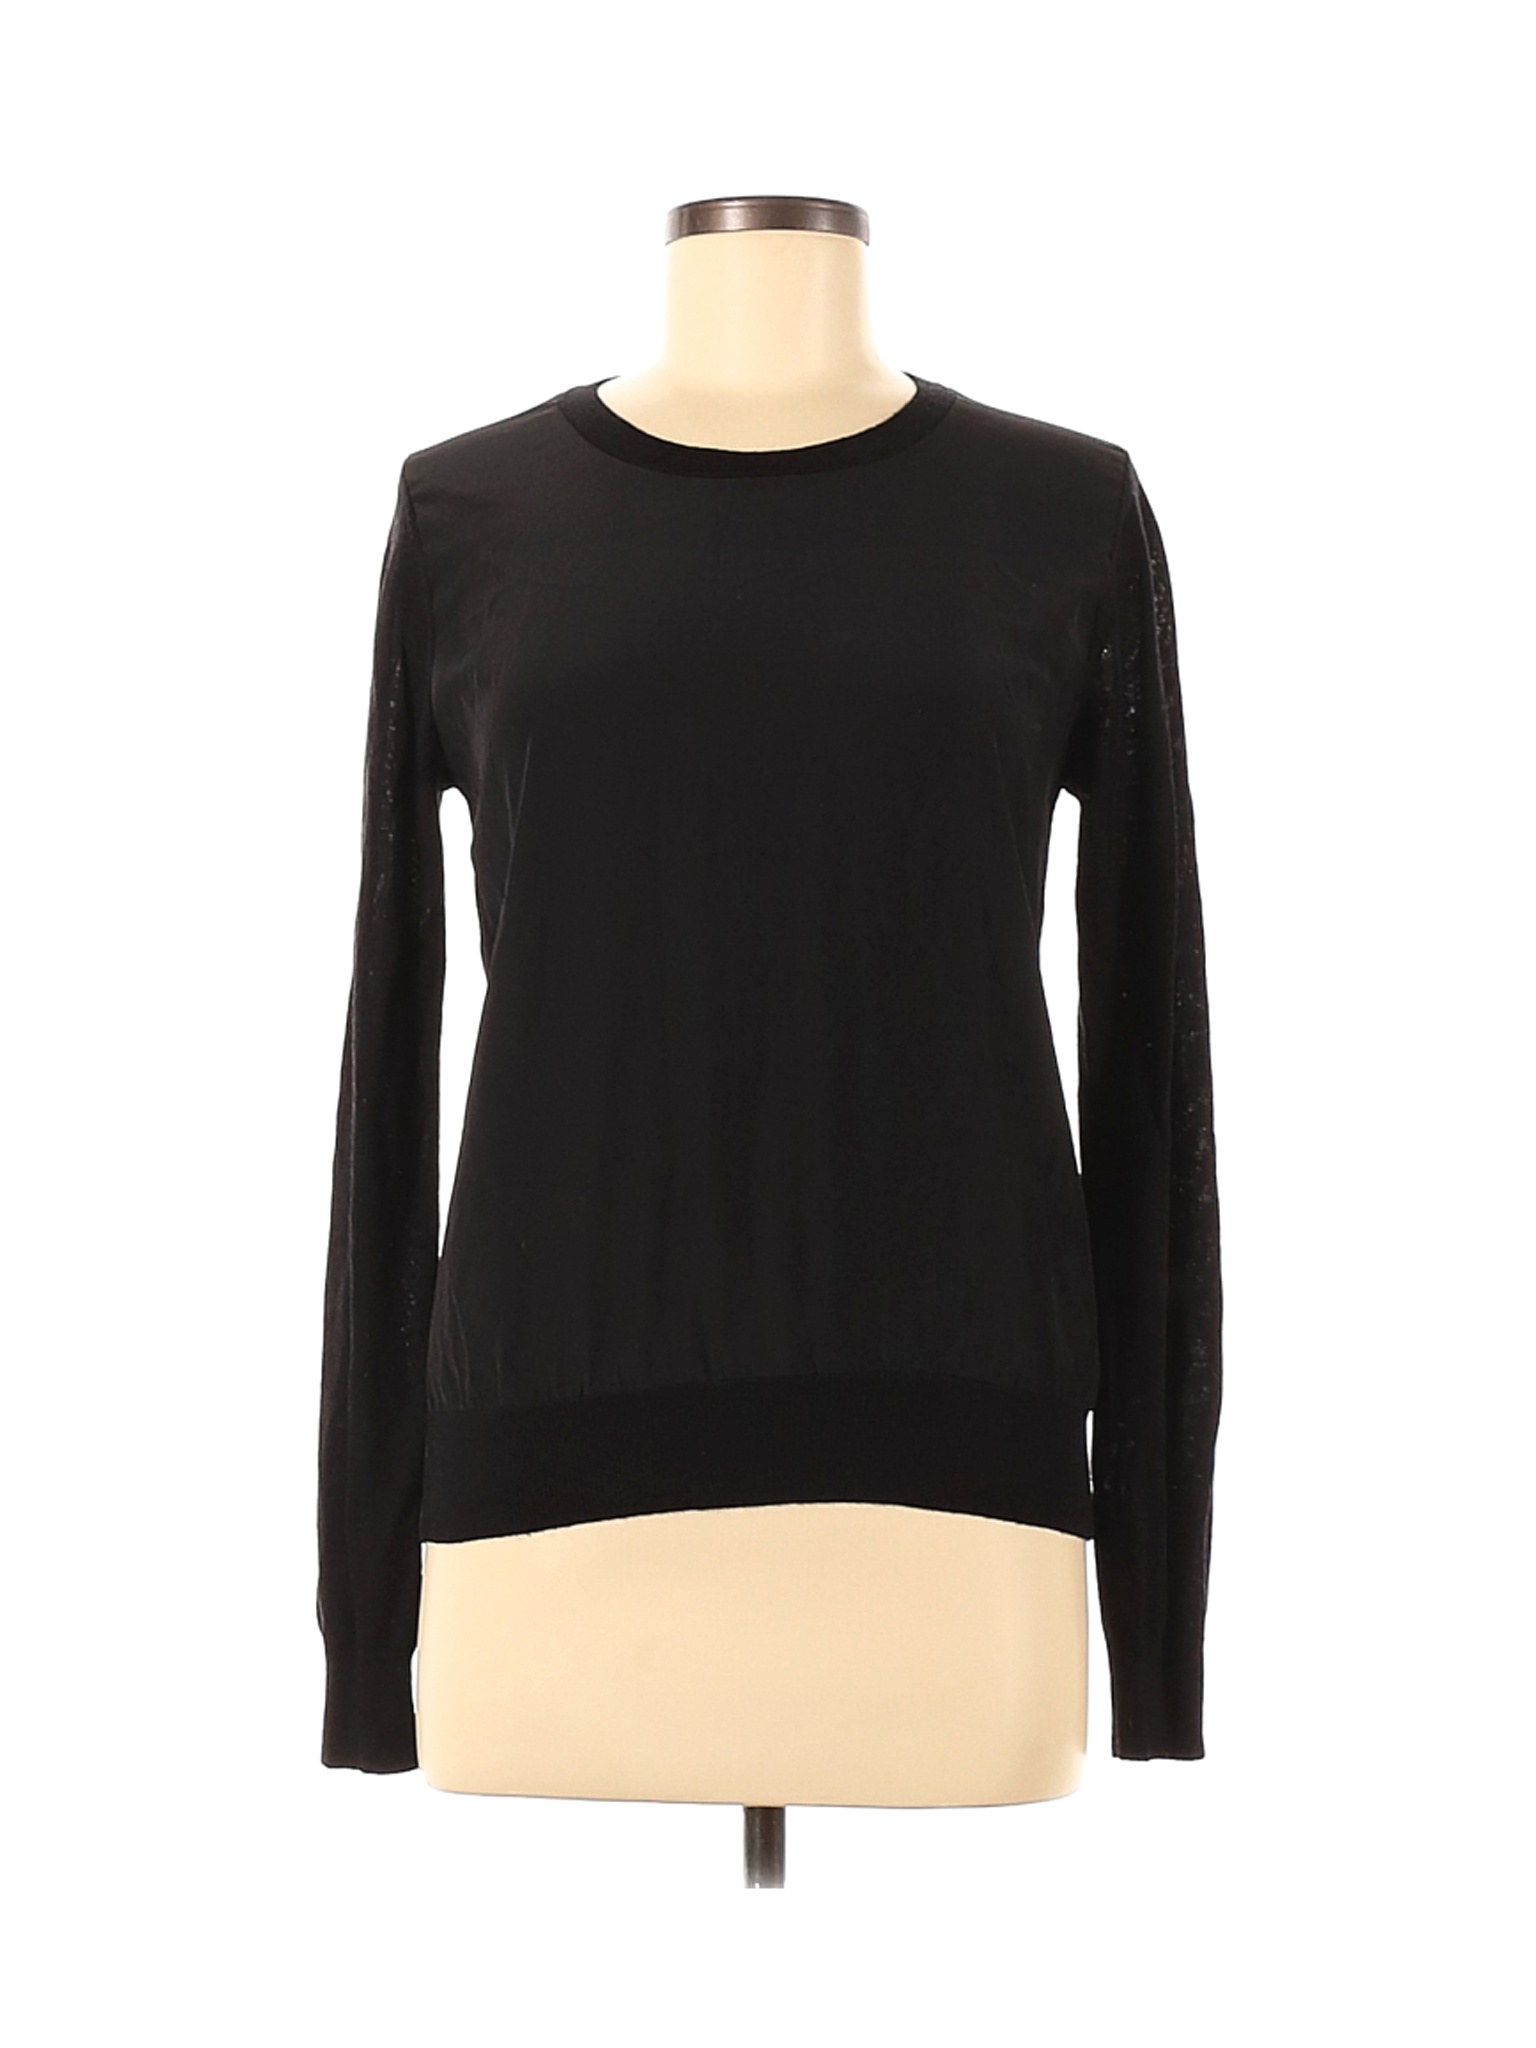 NWT Uniqlo Women Black Pullover Sweater M | eBay